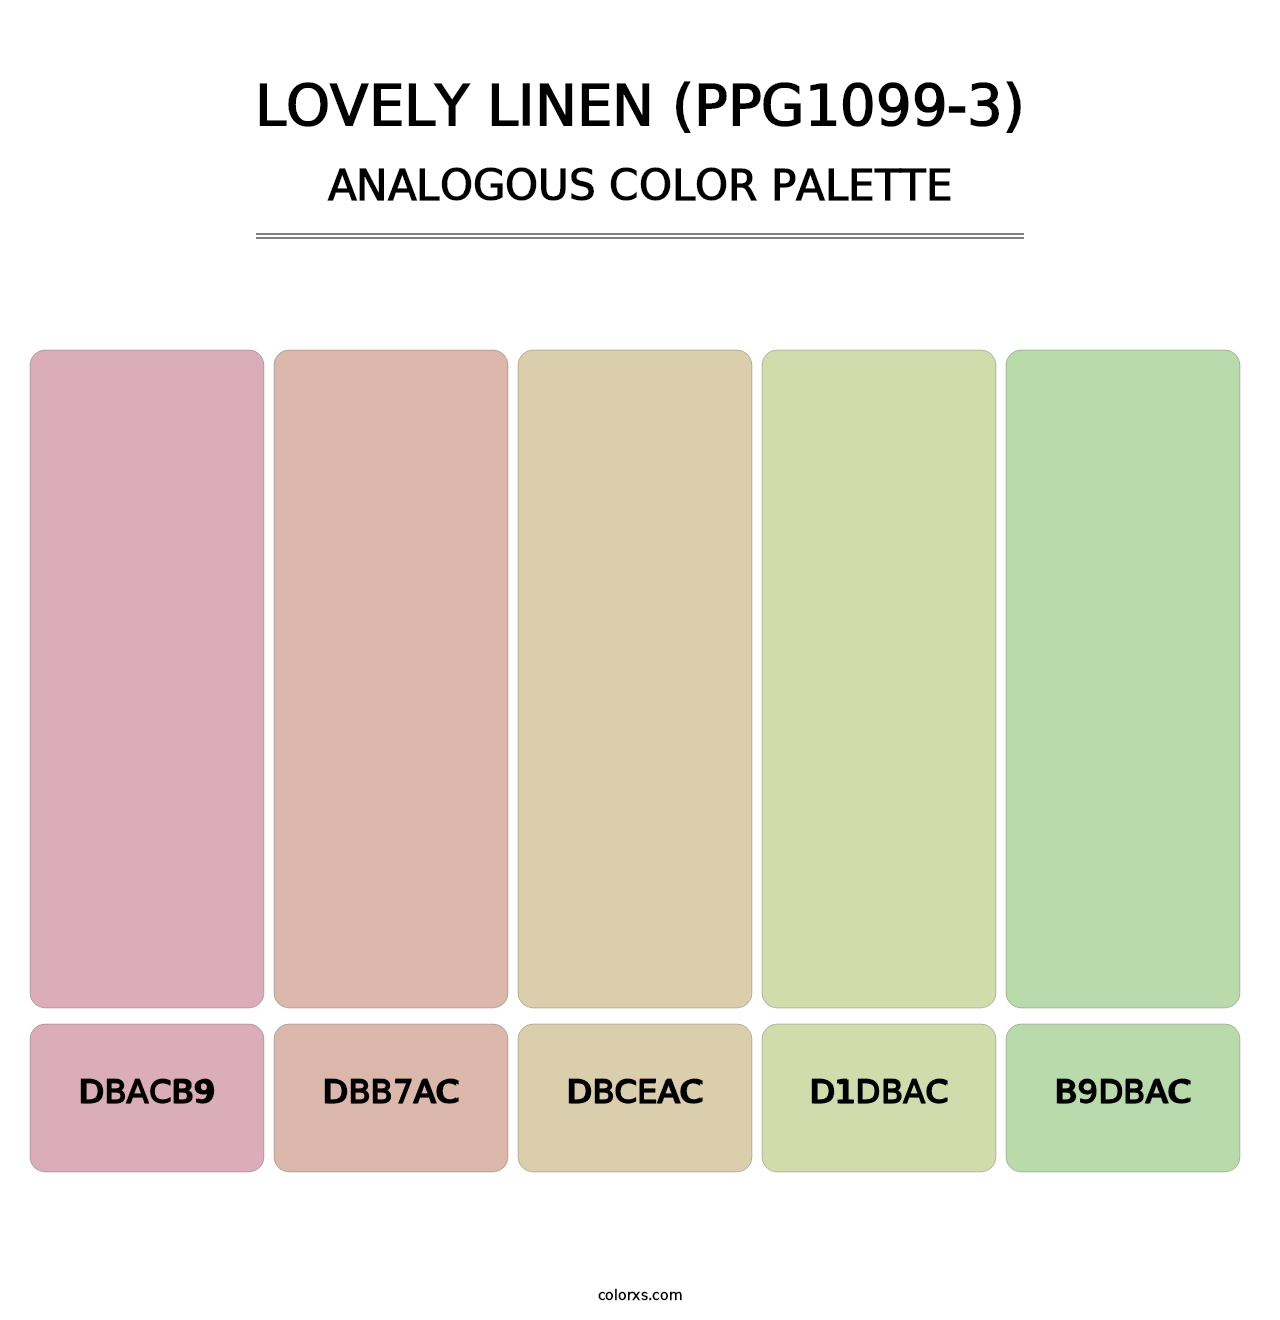 Lovely Linen (PPG1099-3) - Analogous Color Palette